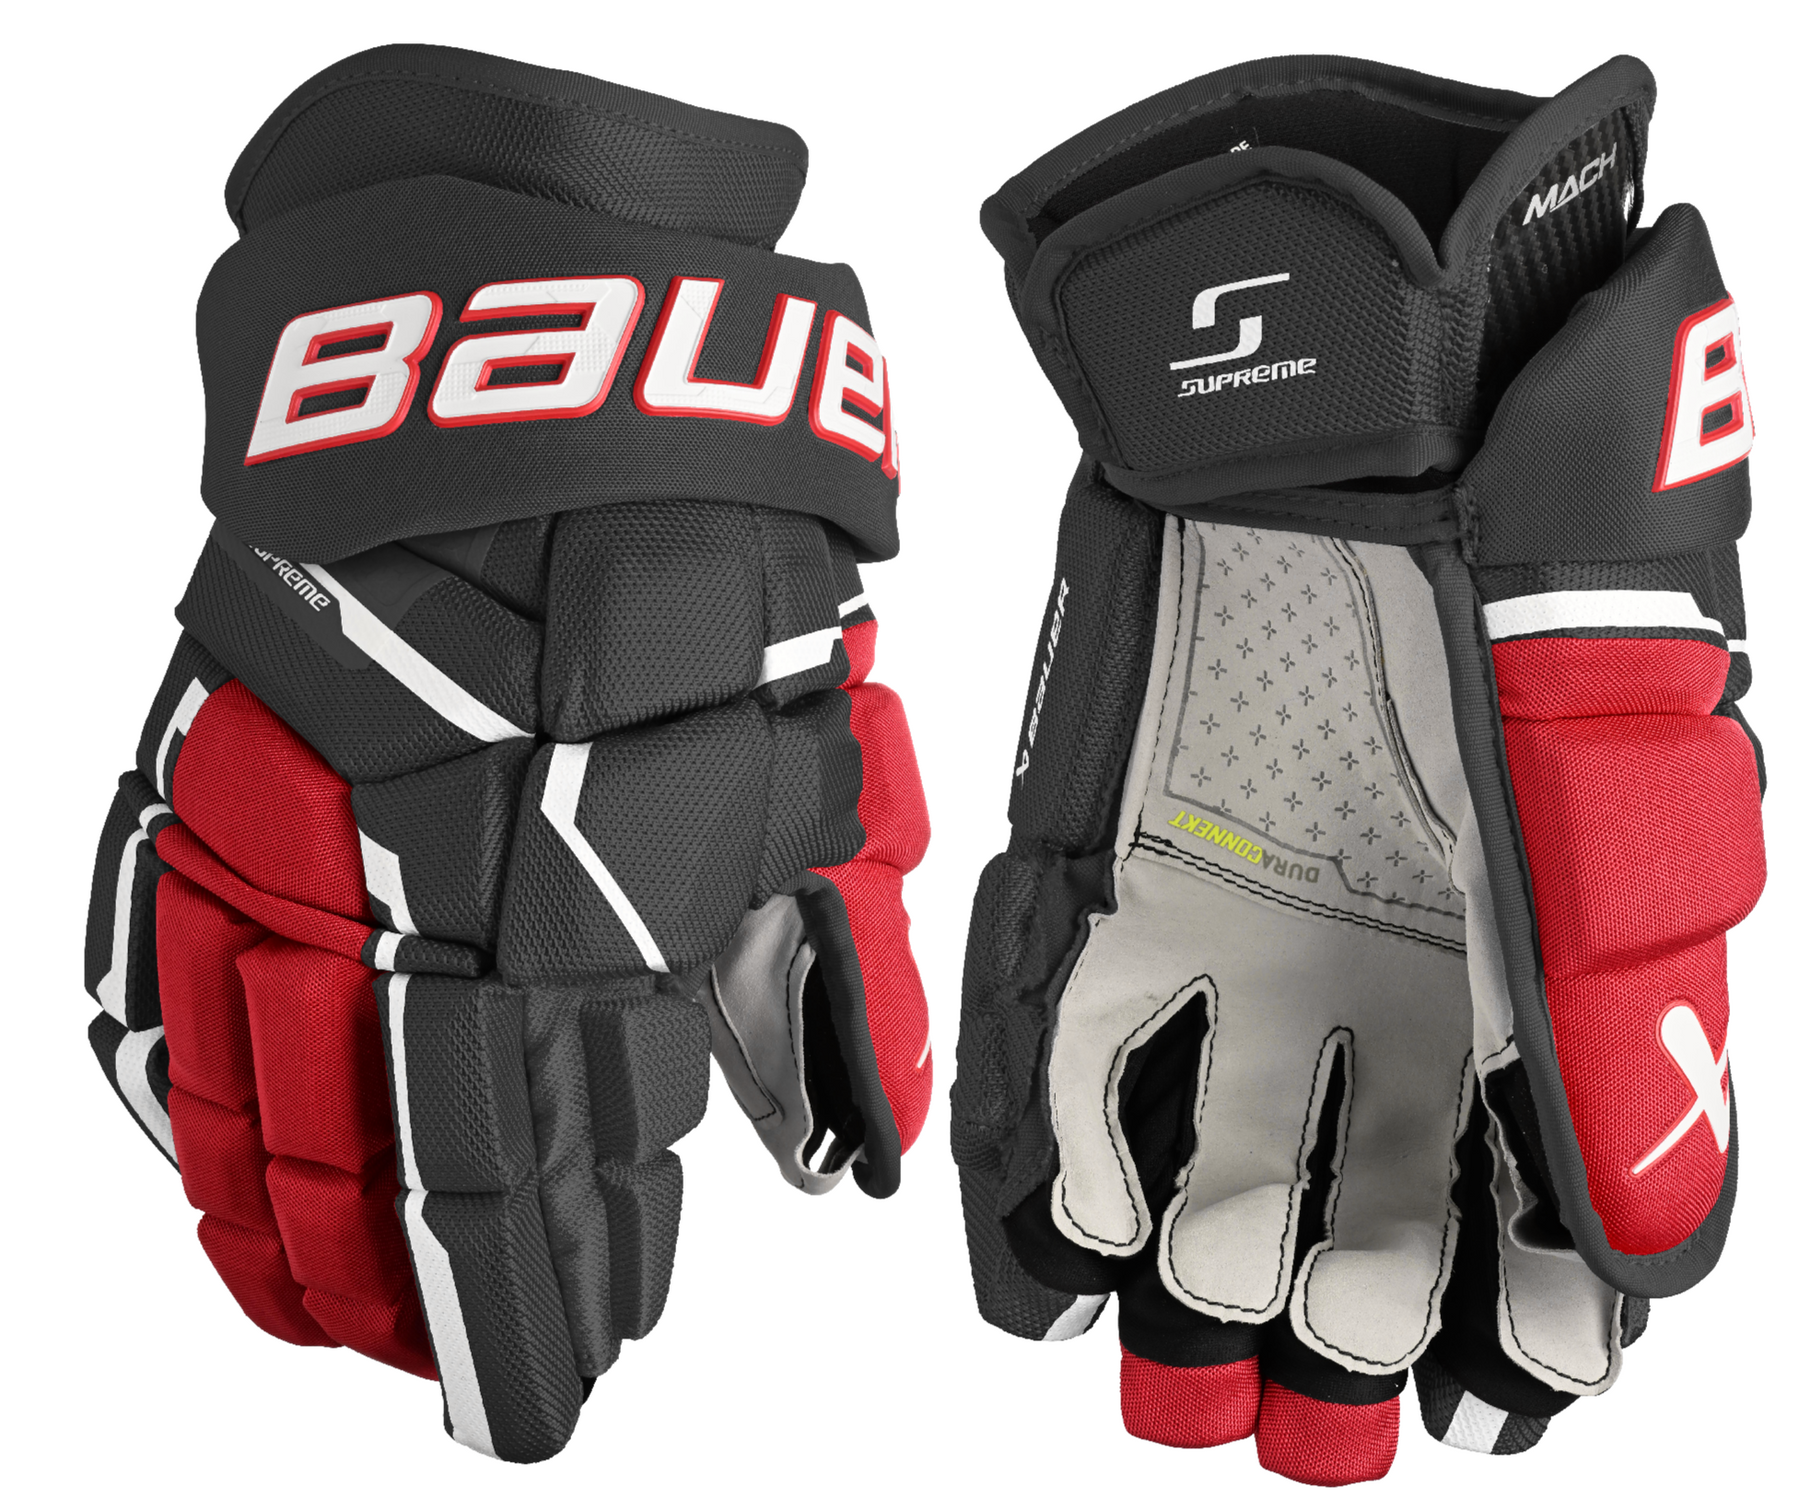 Bauer Supreme Mach Intermediate Hockey Gloves